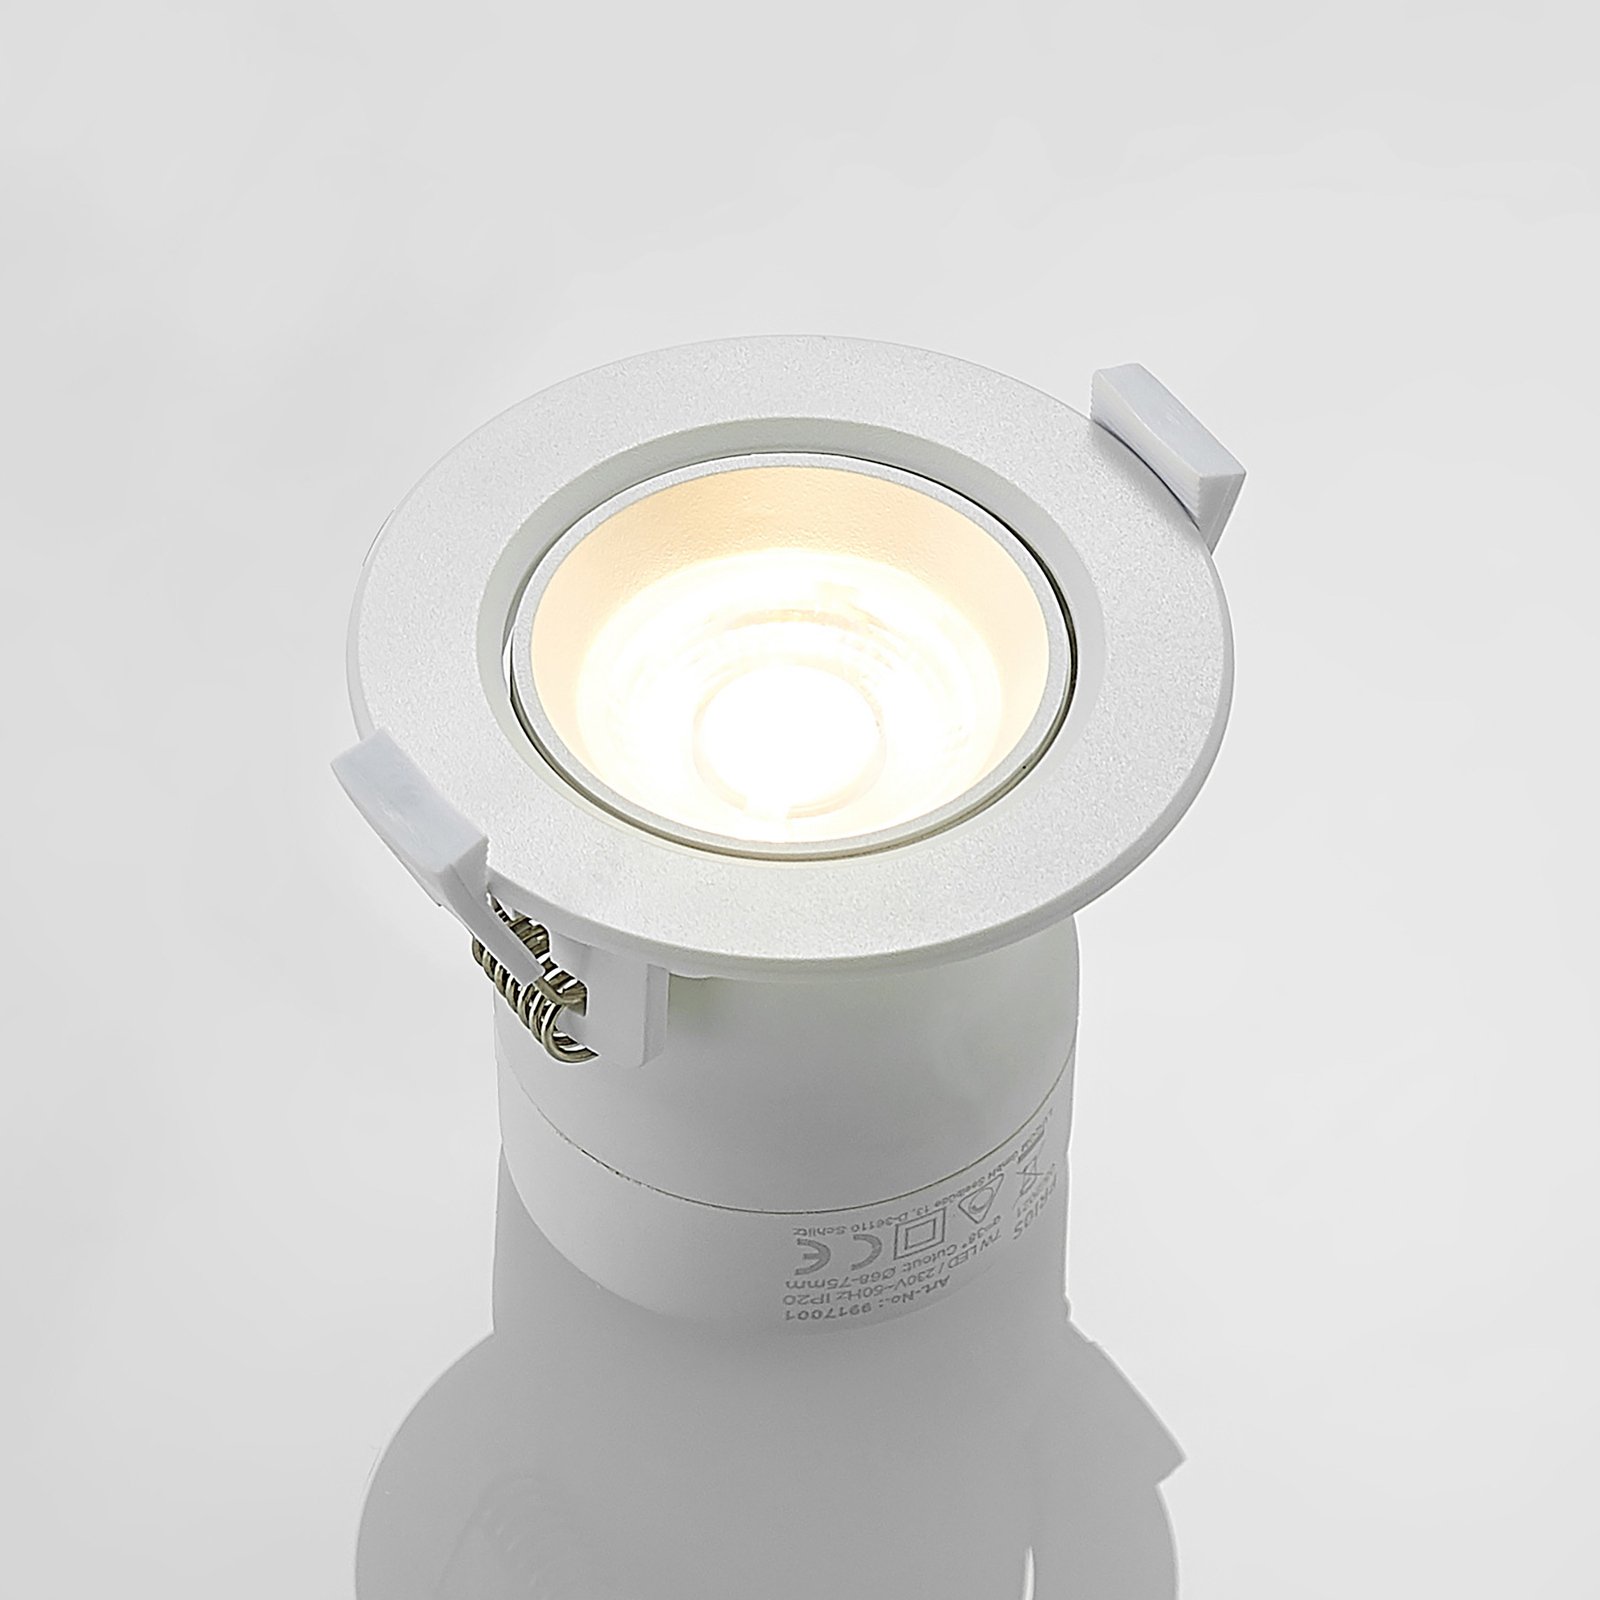 Prios Shima lampe encastrée LED blanche 3 000K, 7W